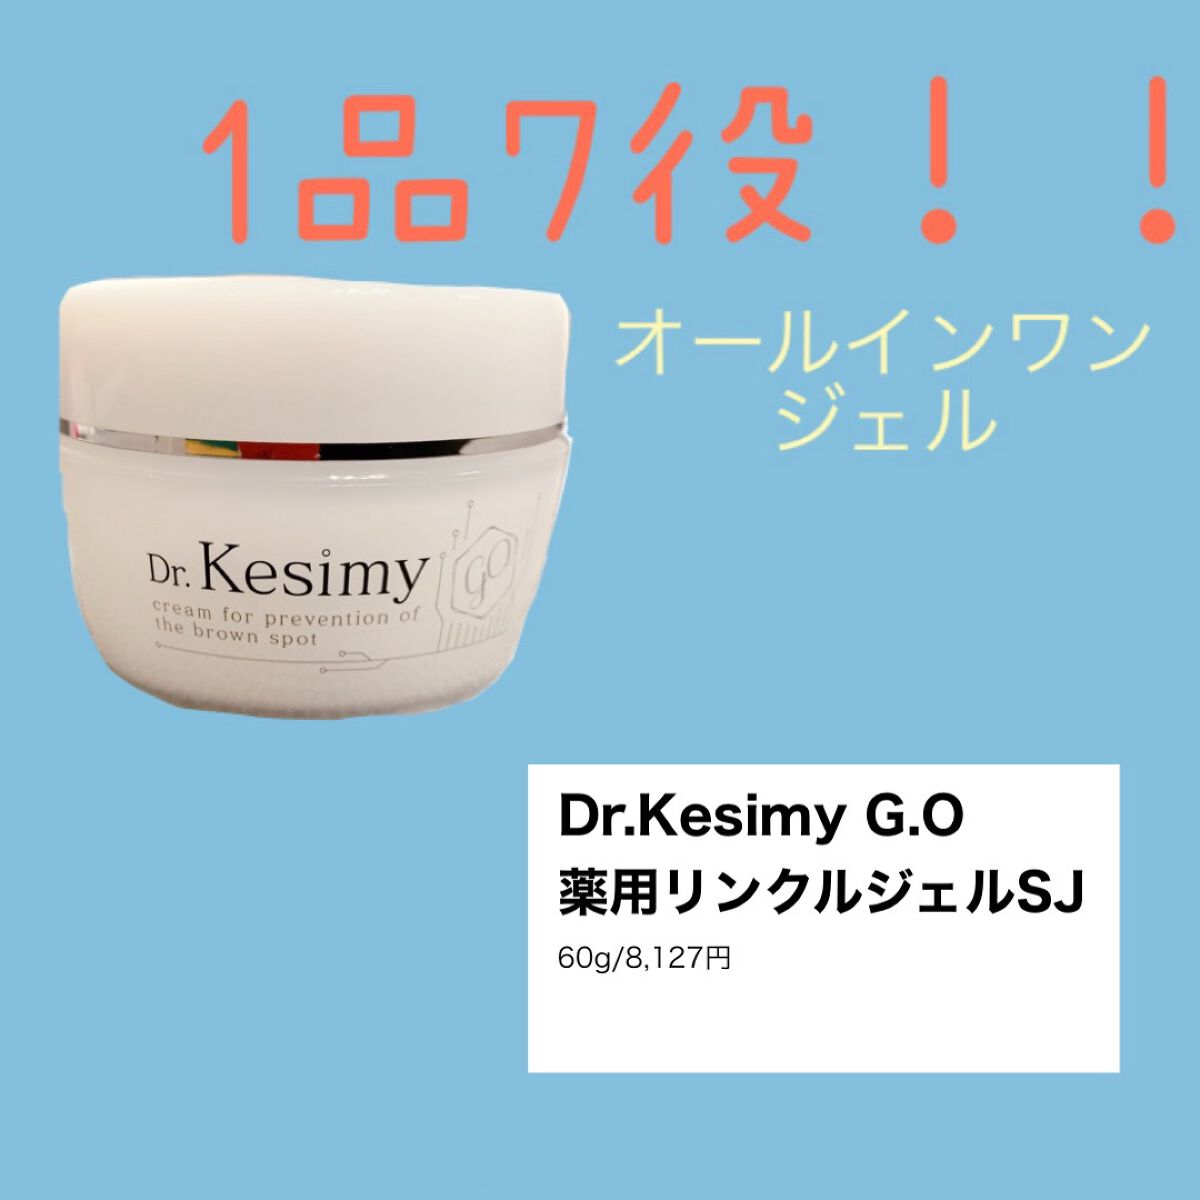 ー販売単位Dr.Kesimy ドクターケシミー 薬用リンクルジェルSJ 60g 6個セット